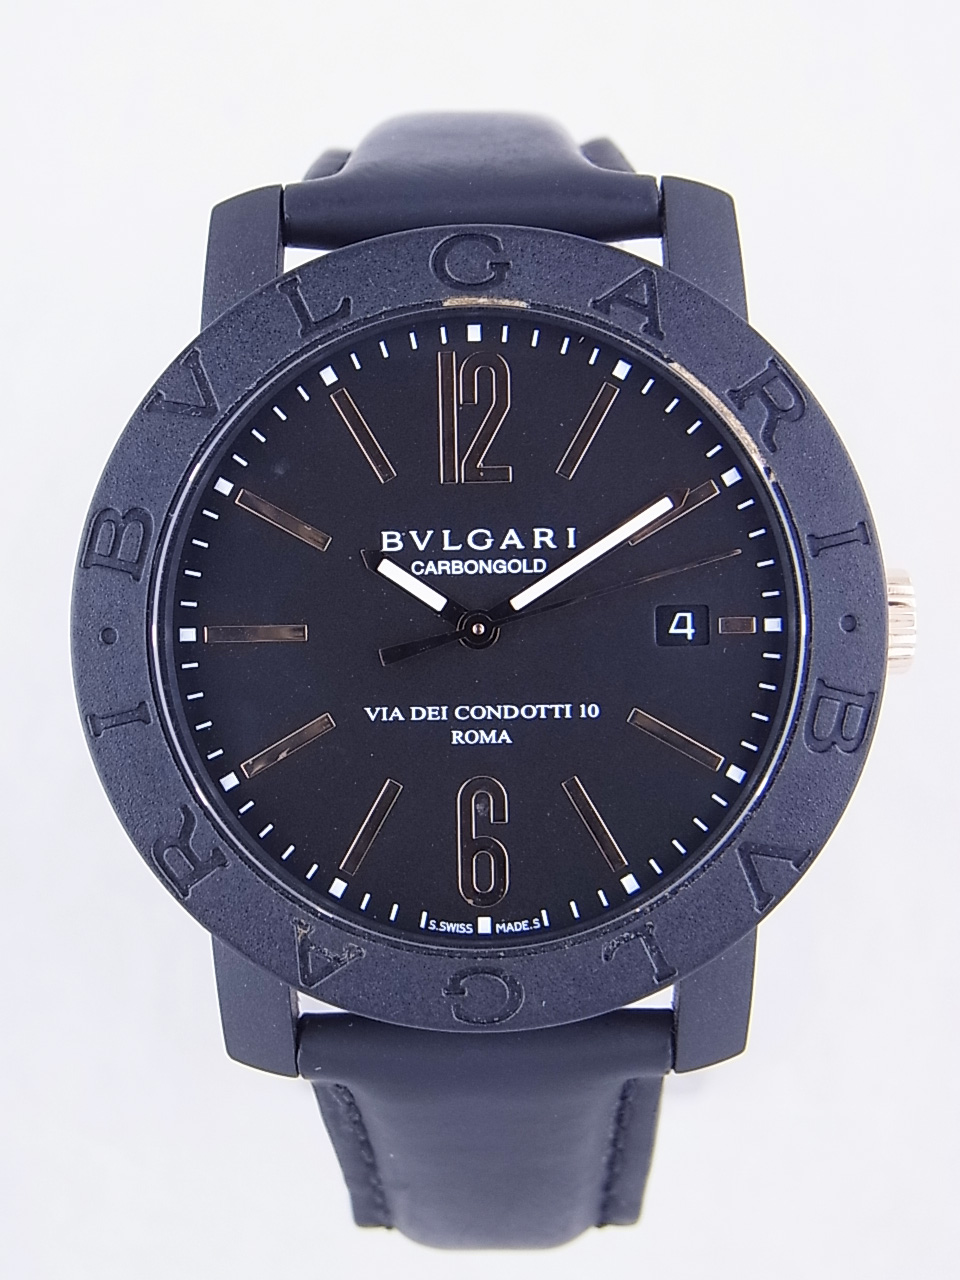 ブルガリ(bvlgari)時計通販・販売|新品 中古－ブランド時計販売のクエリ